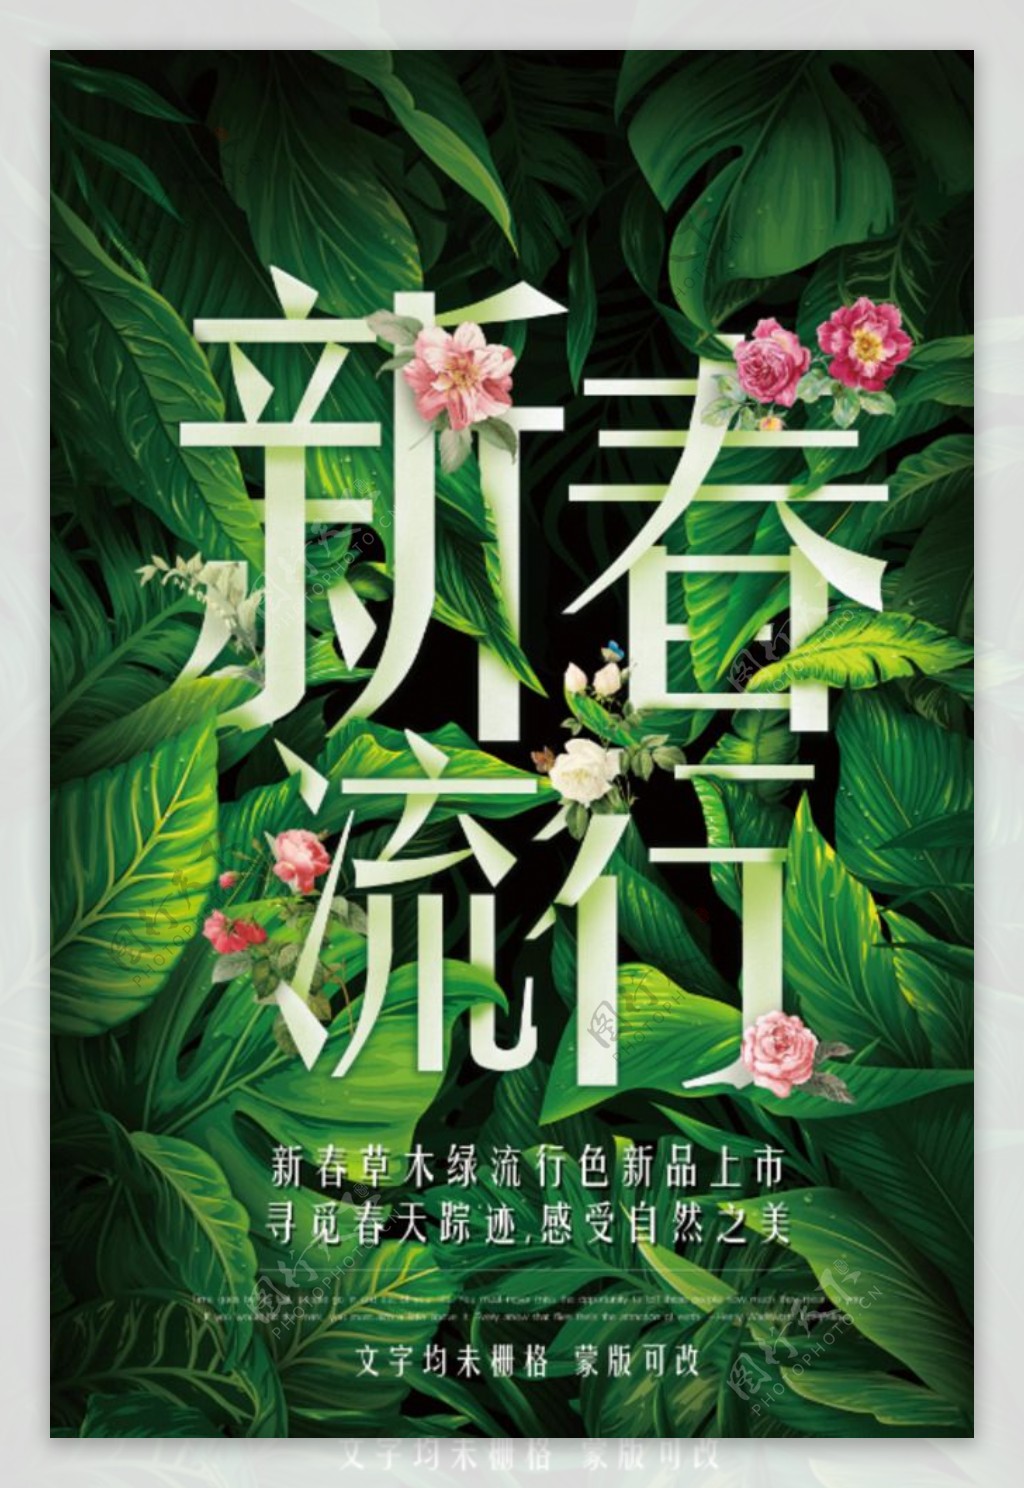 新春流行时尚活动宣传海报背景素